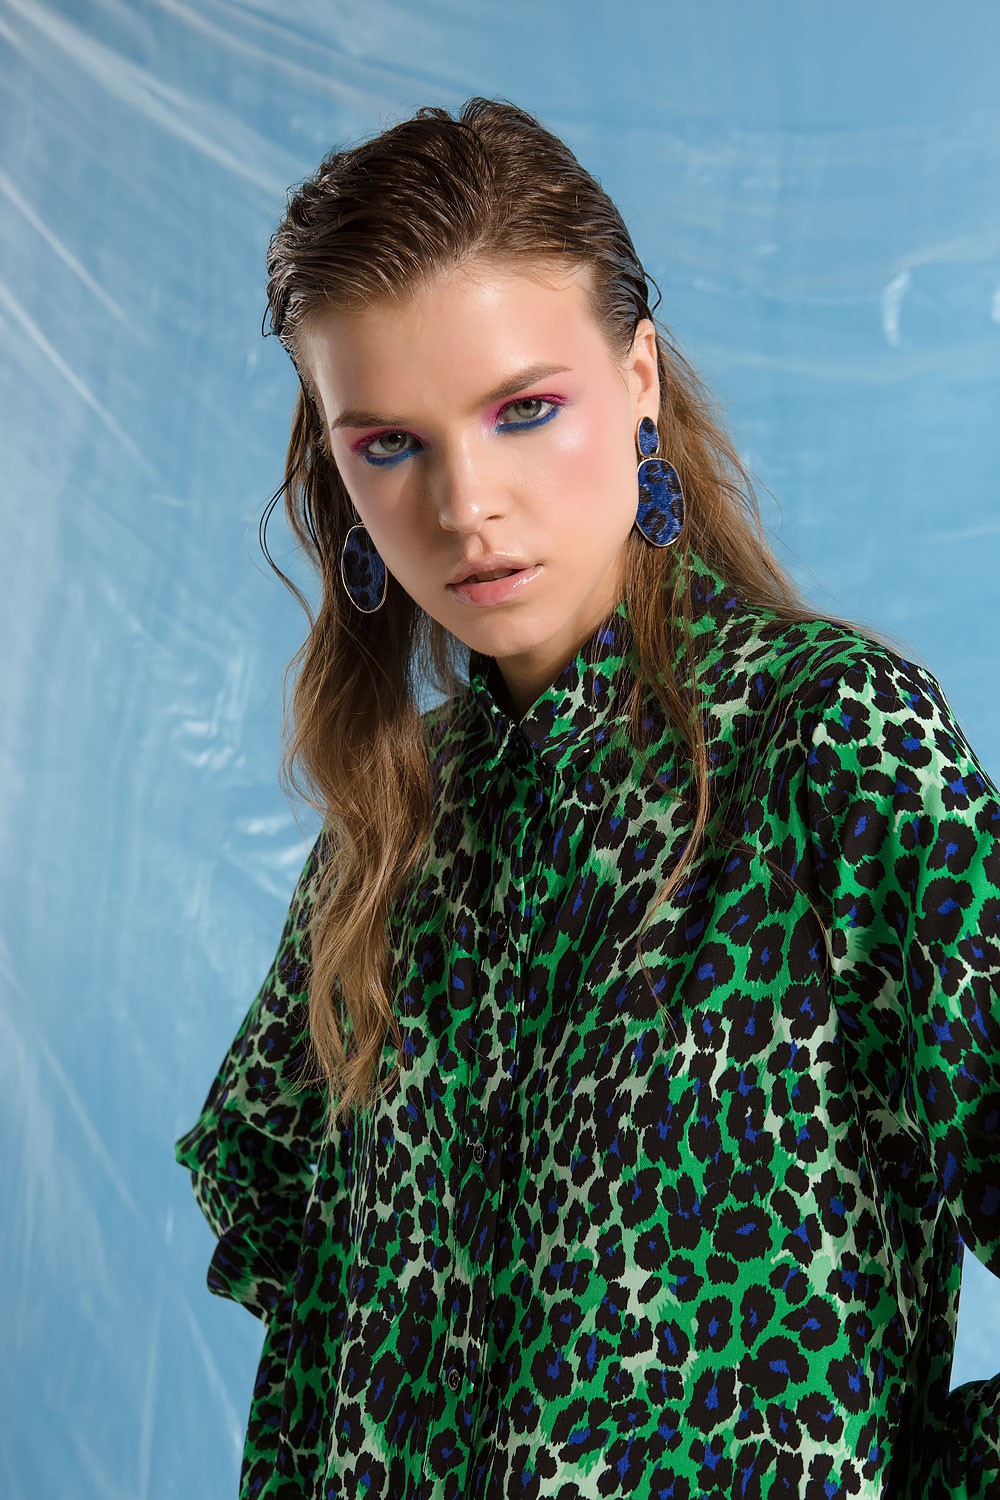 Πουκαμίσα-φόρεμα με leopard print